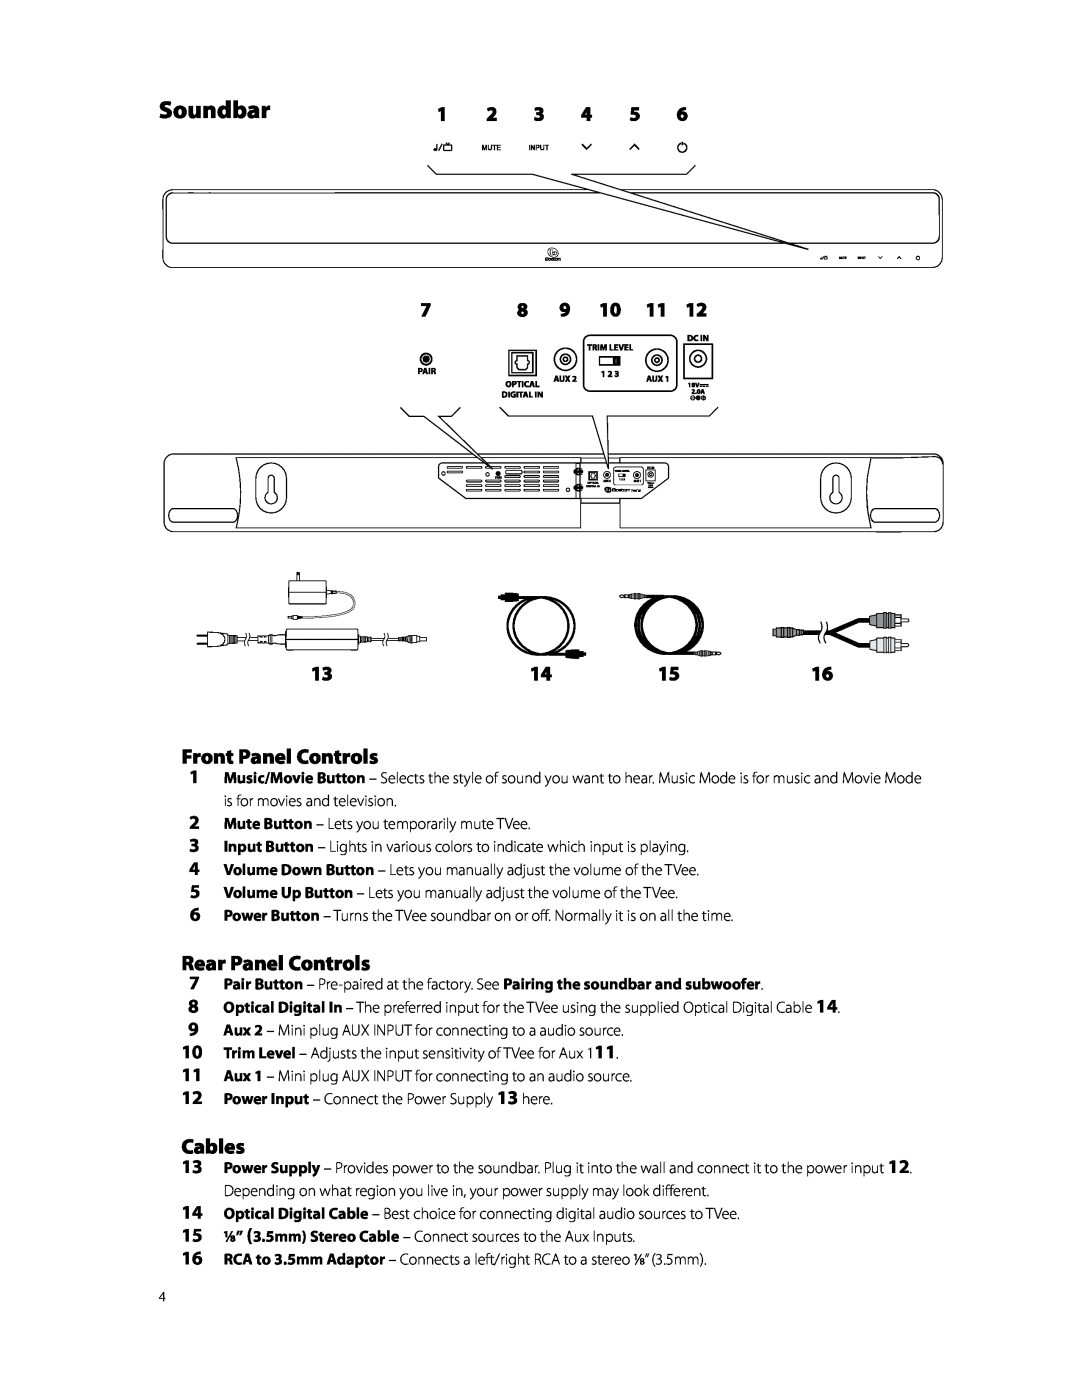 Boston Acoustics TVEEM26B owner manual Soundbar, Front Panel Controls, Rear Panel Controls, Cables 